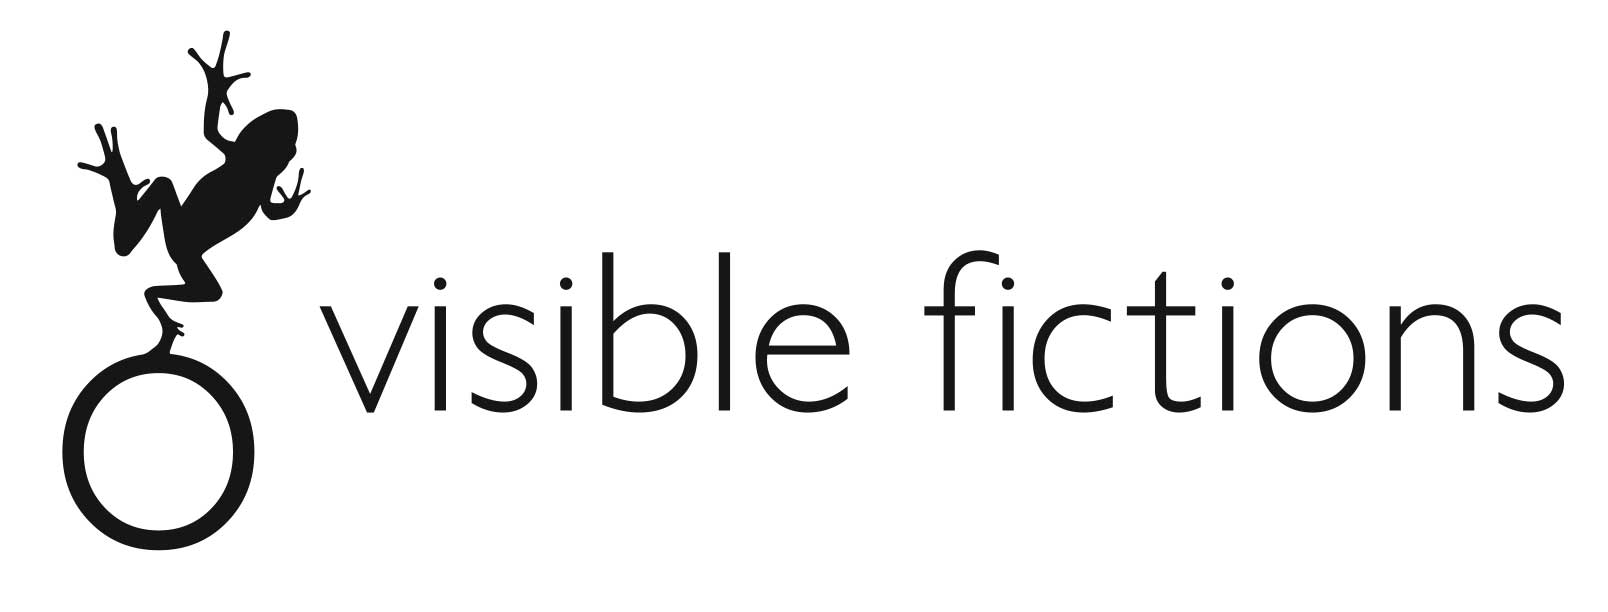 visible fictions logo